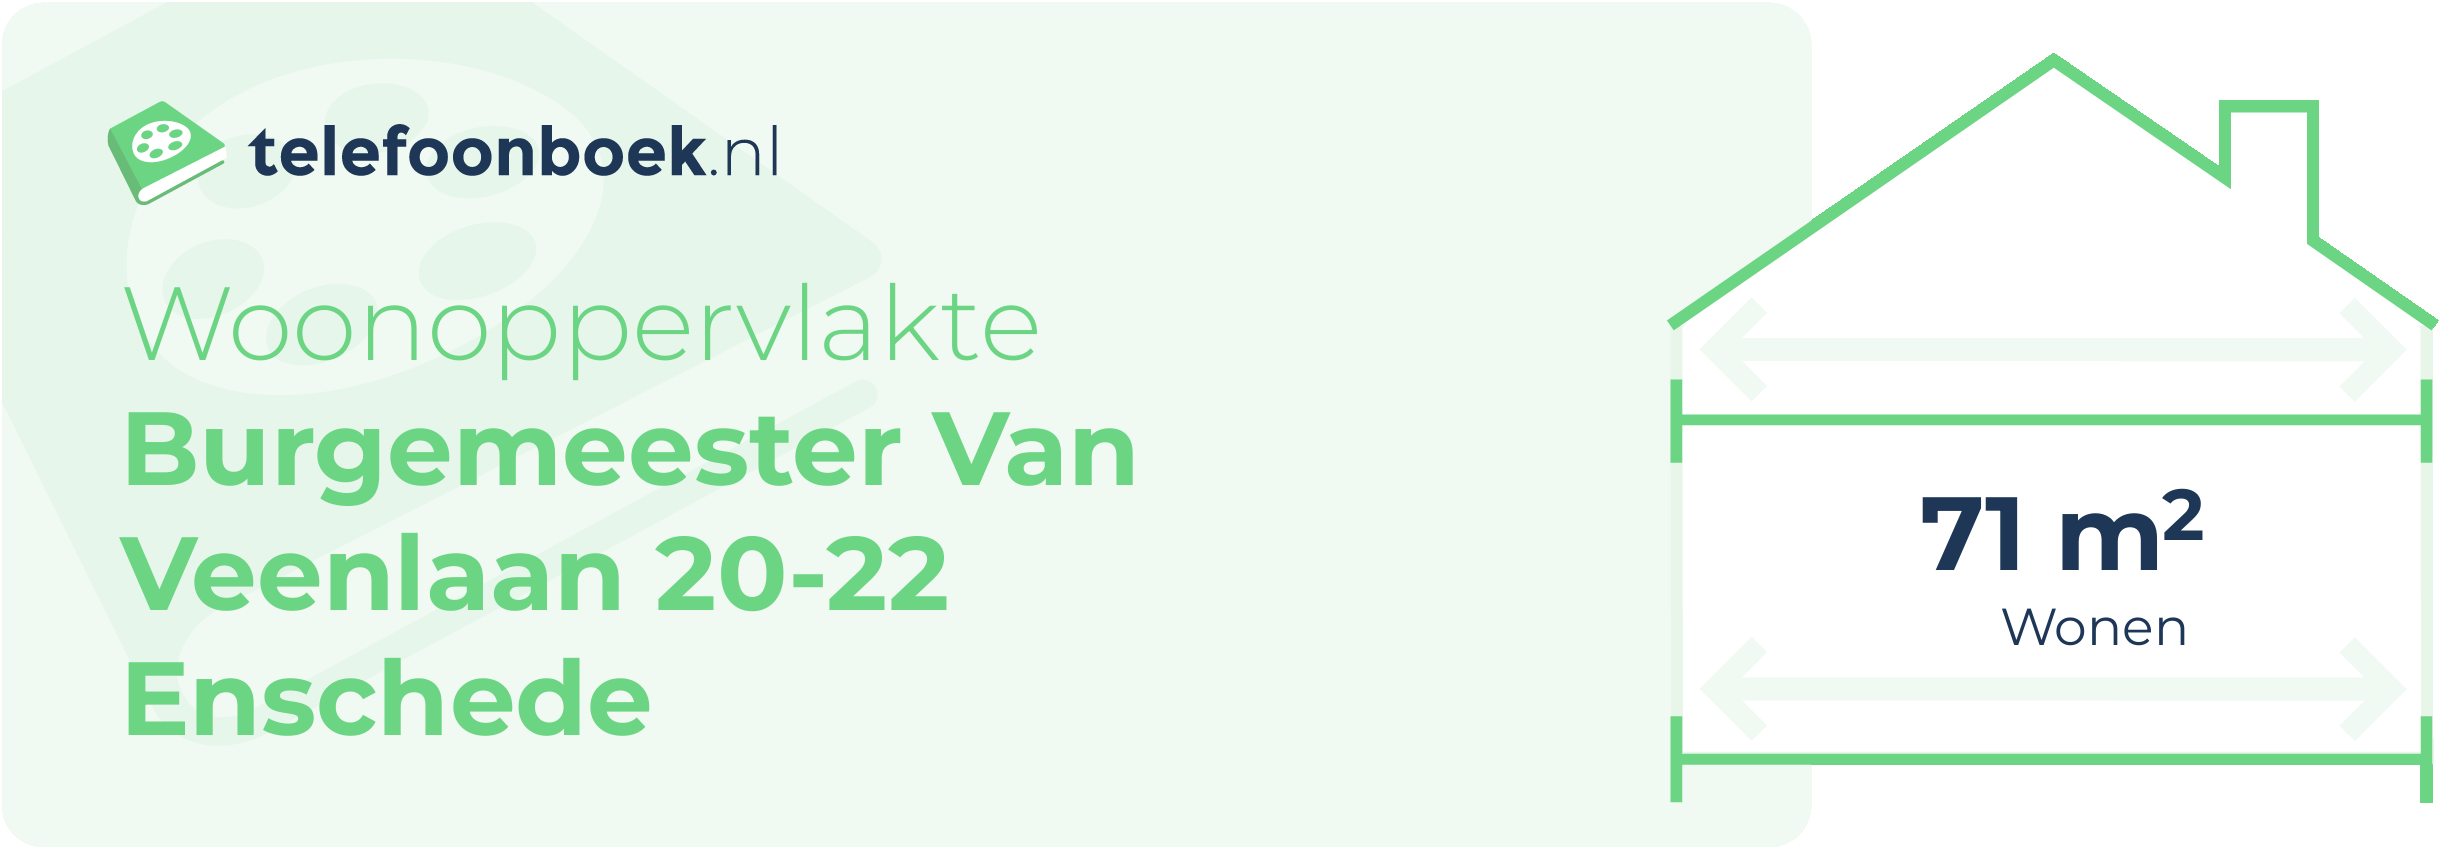 Woonoppervlakte Burgemeester Van Veenlaan 20-22 Enschede